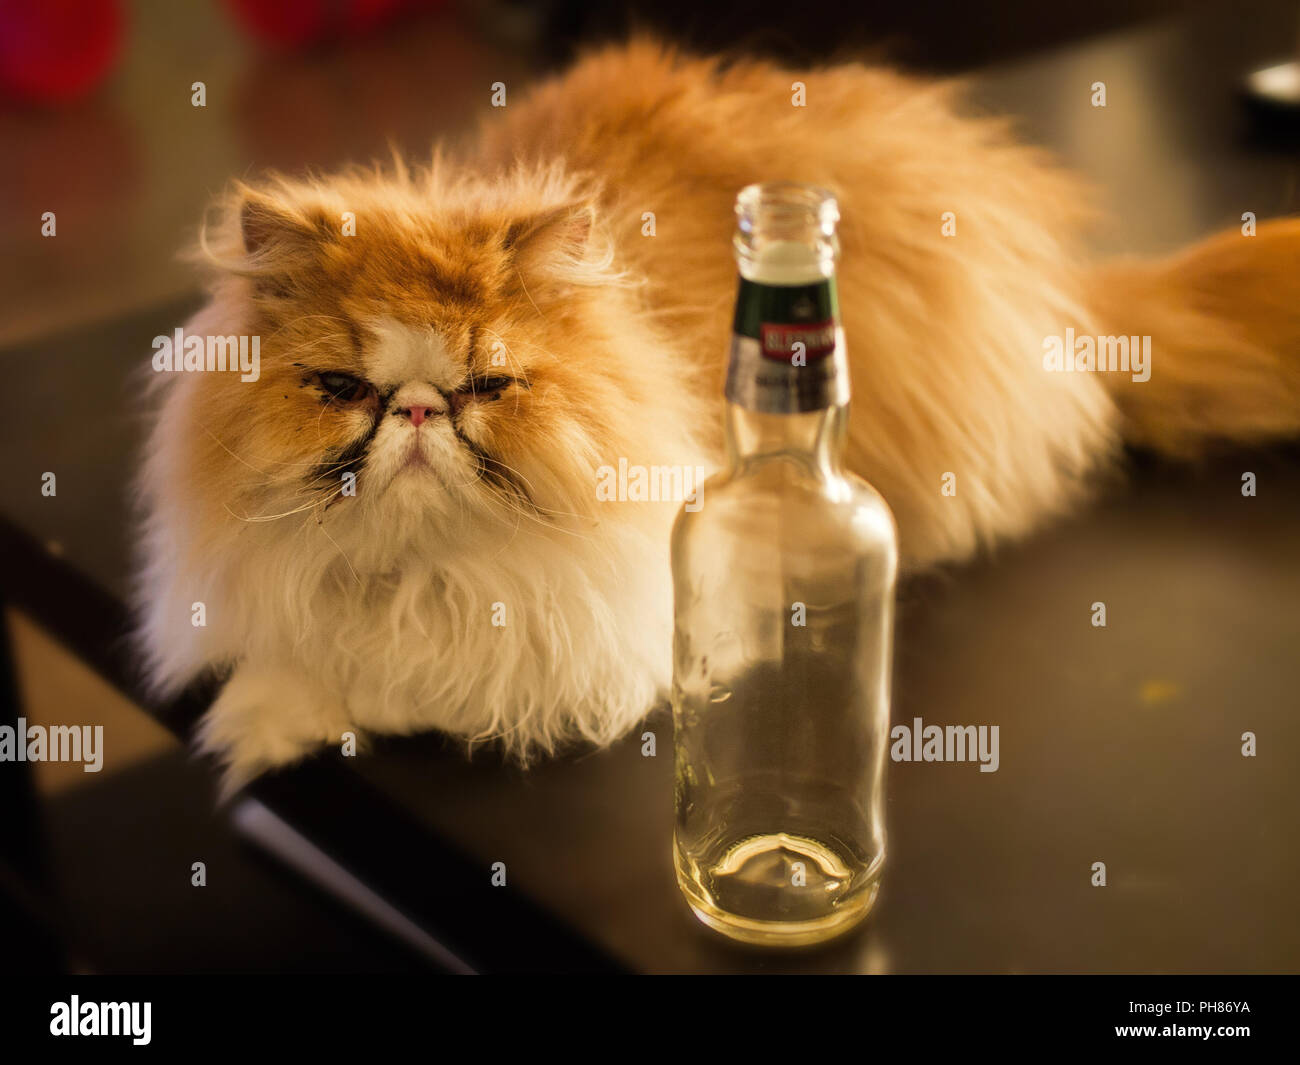 Cat gueule de bois, verre, boire, alcool, alcool visage grincheux chaton  Photo Stock - Alamy